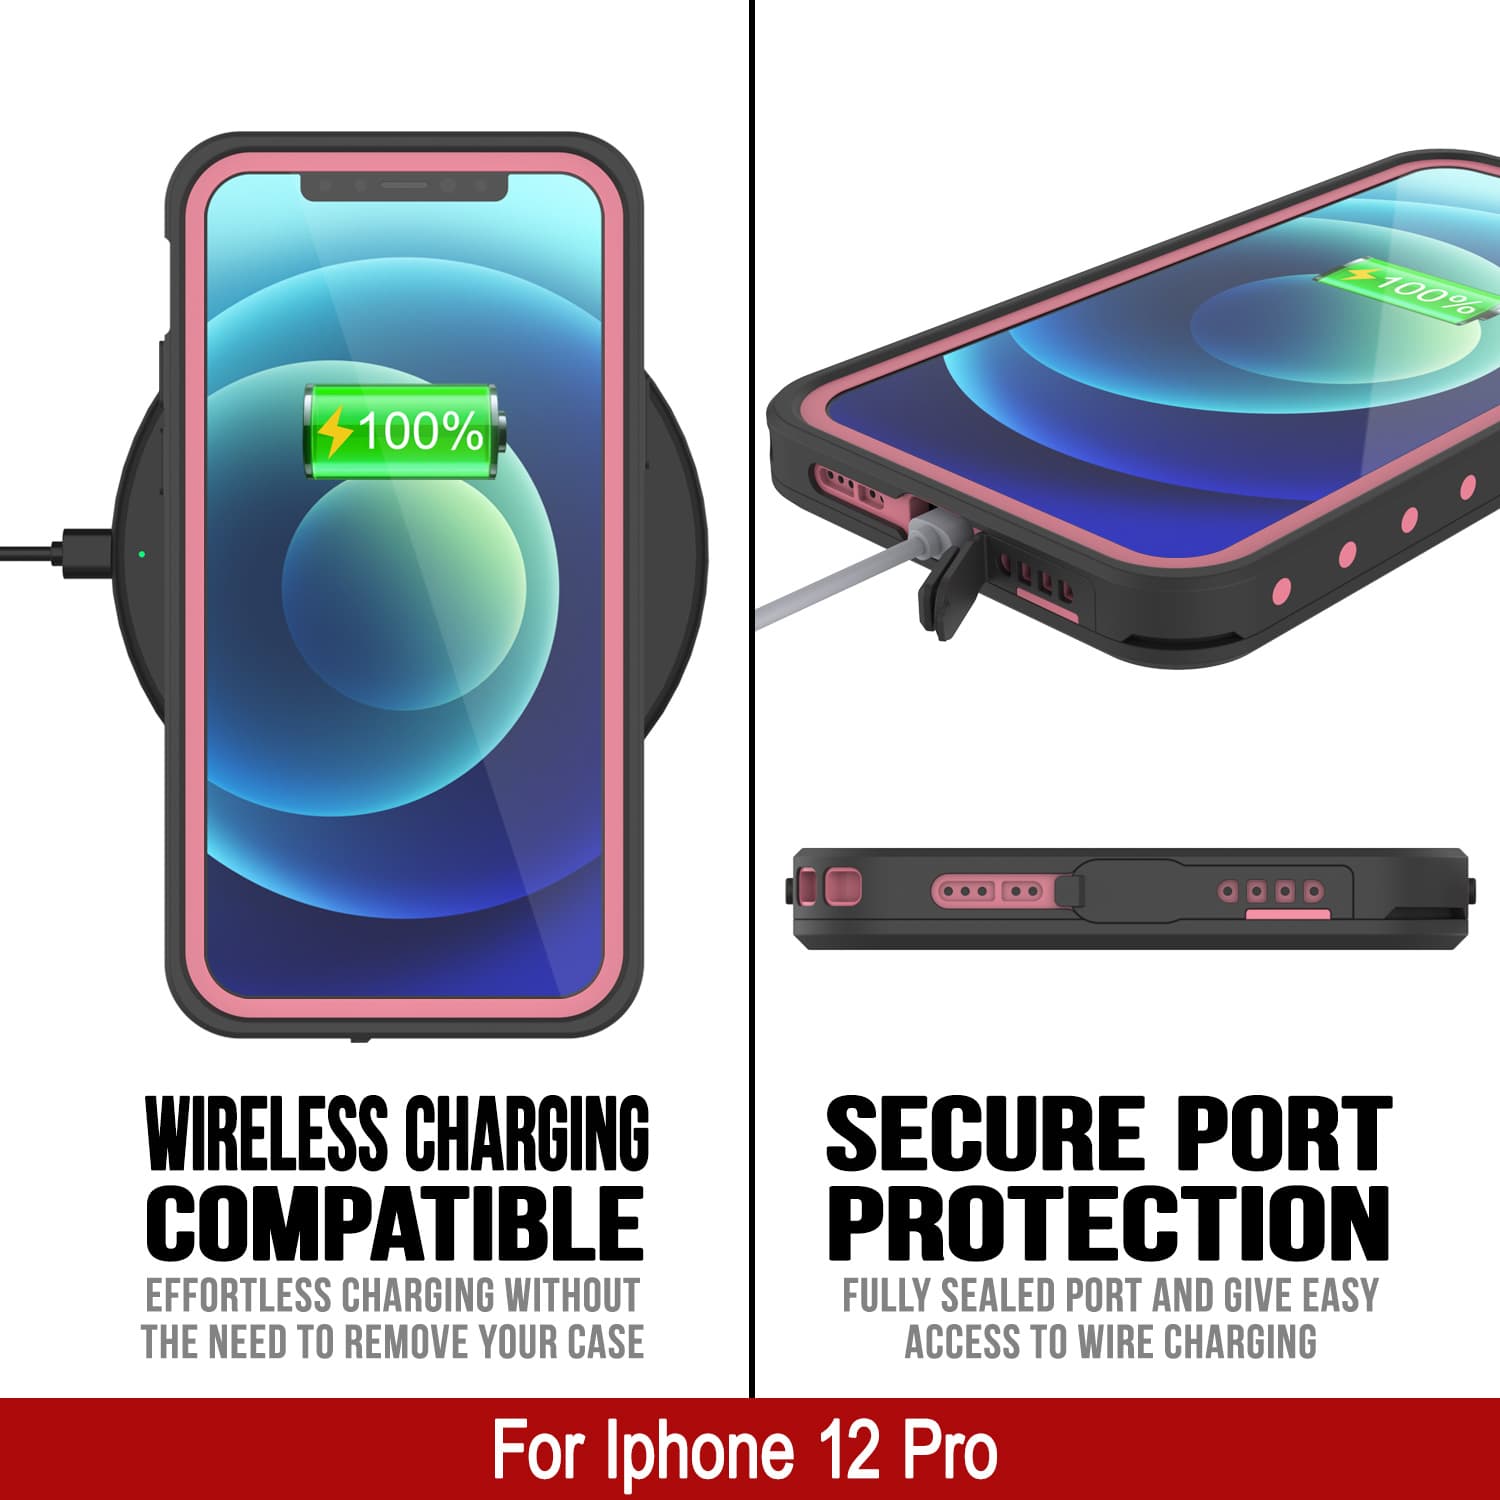 iPhone 12 Pro Waterproof IP68 Case, Punkcase [Pink] [StudStar Series] [Slim Fit] [Dirtproof]